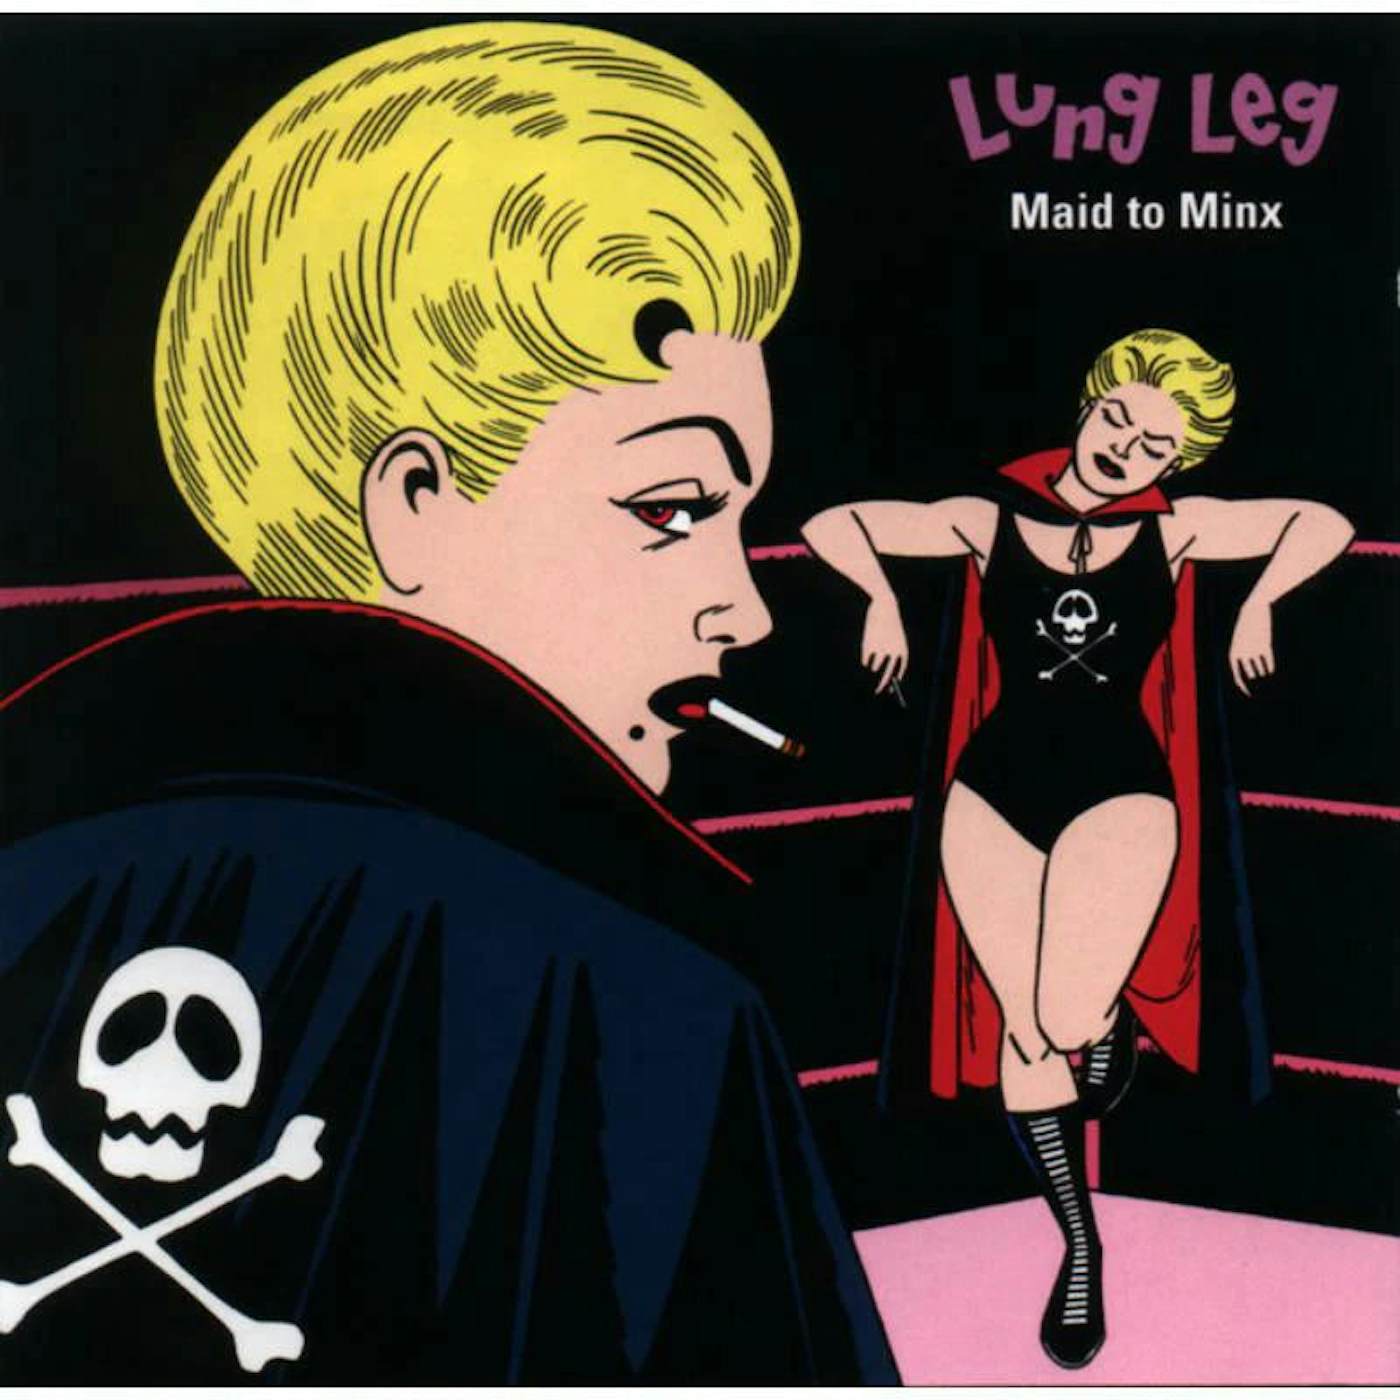 Lung Leg LP - Maid To Minx (Vinyl)